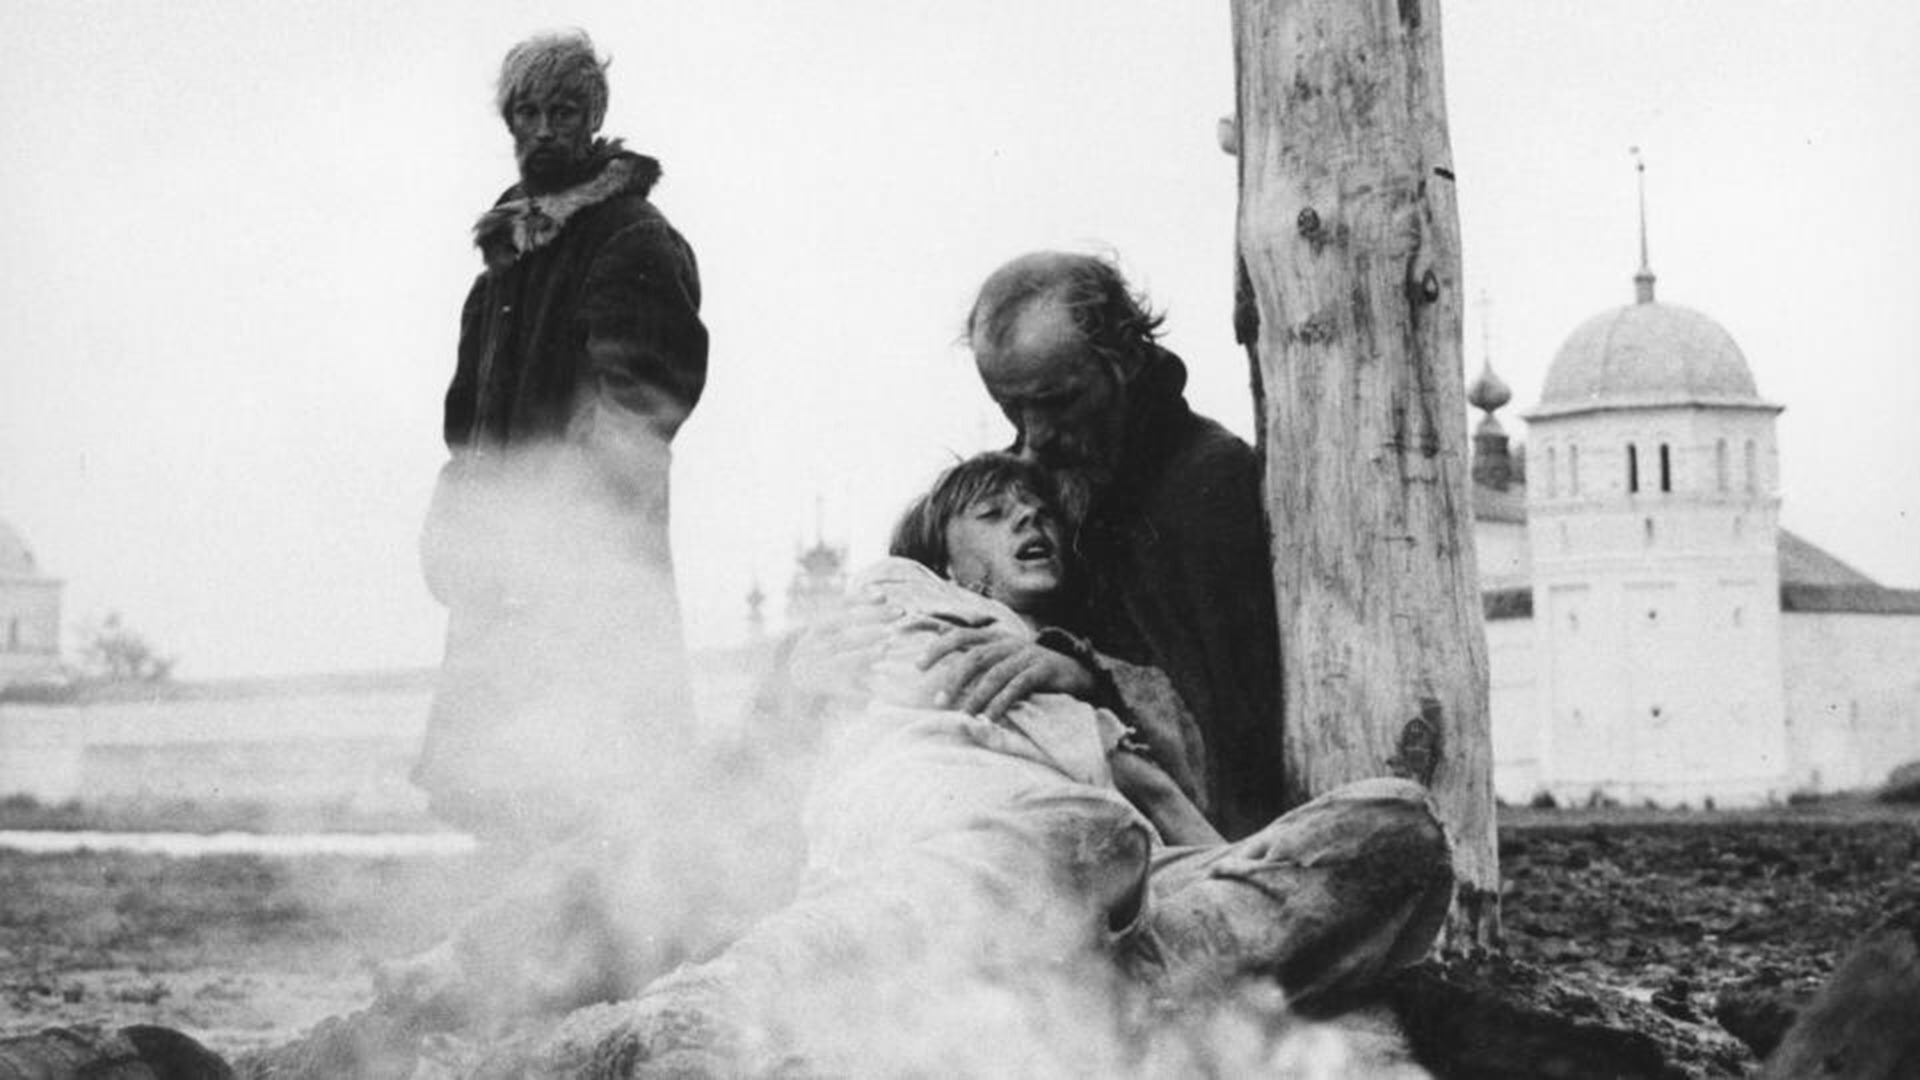 Andrej Rubljov, 1966
